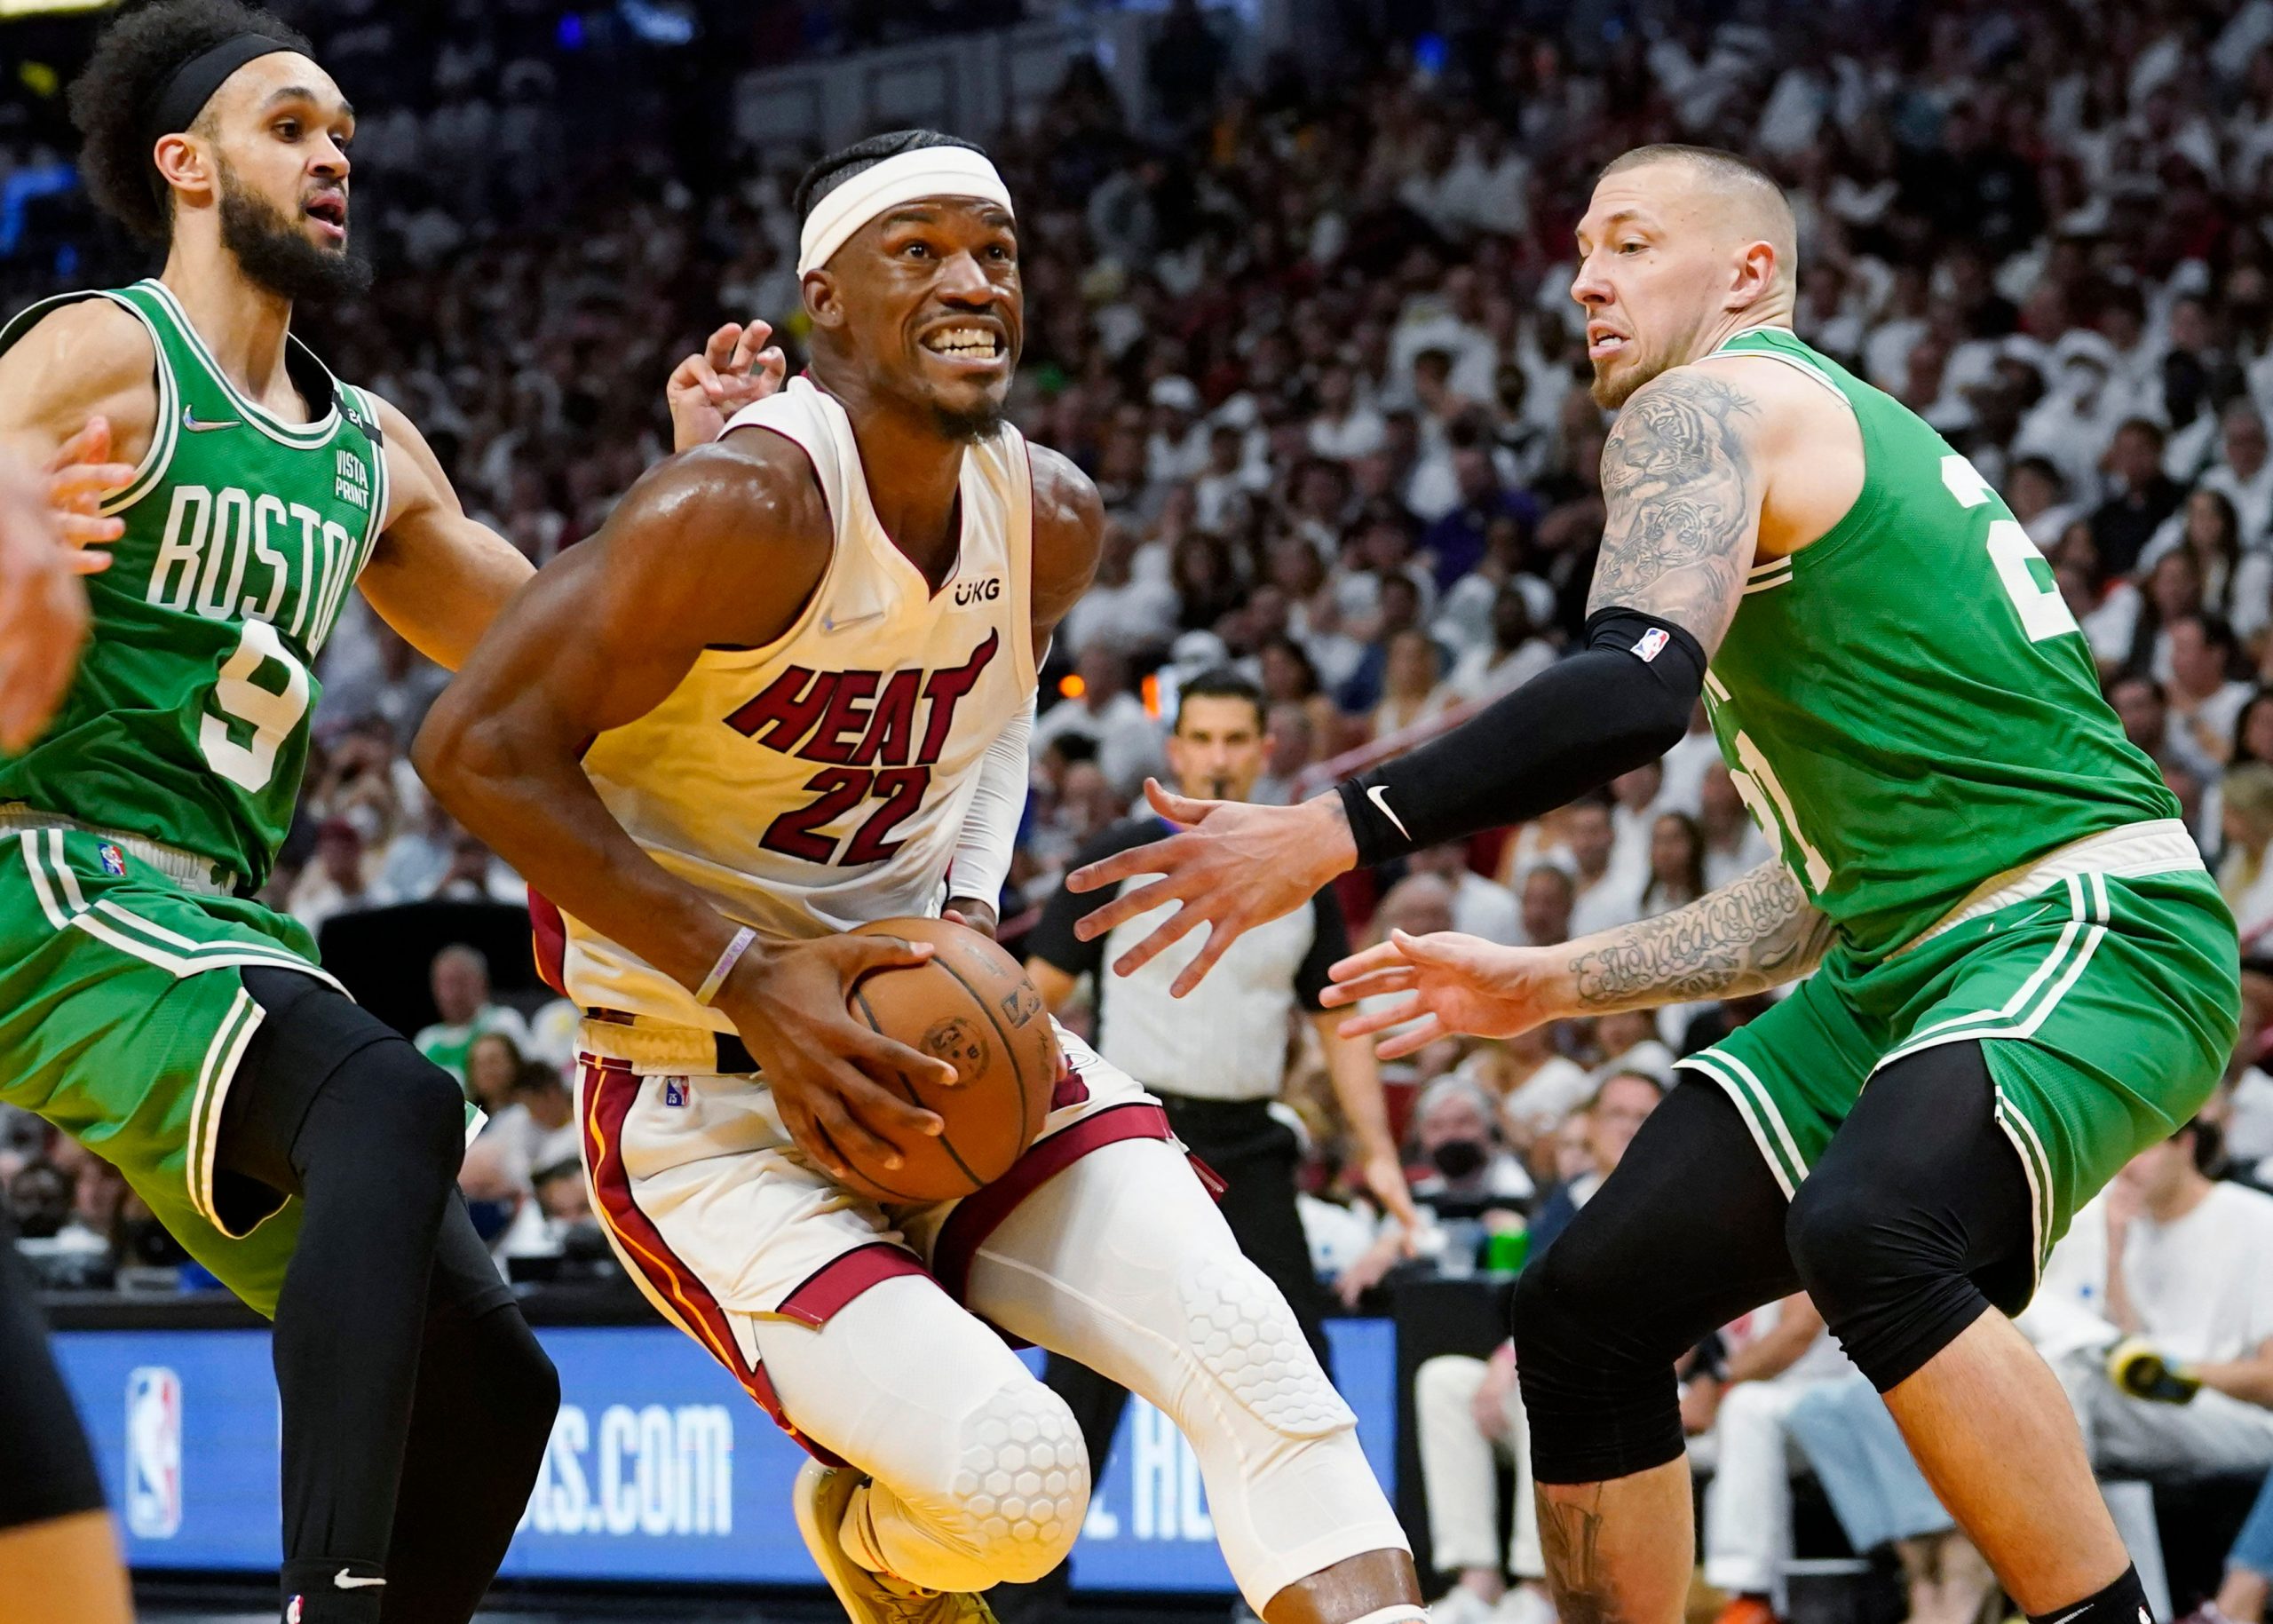 NBA: Jimmy Butler scores 41, Miami Heat take Game 1 from Boston Celtics 118-107